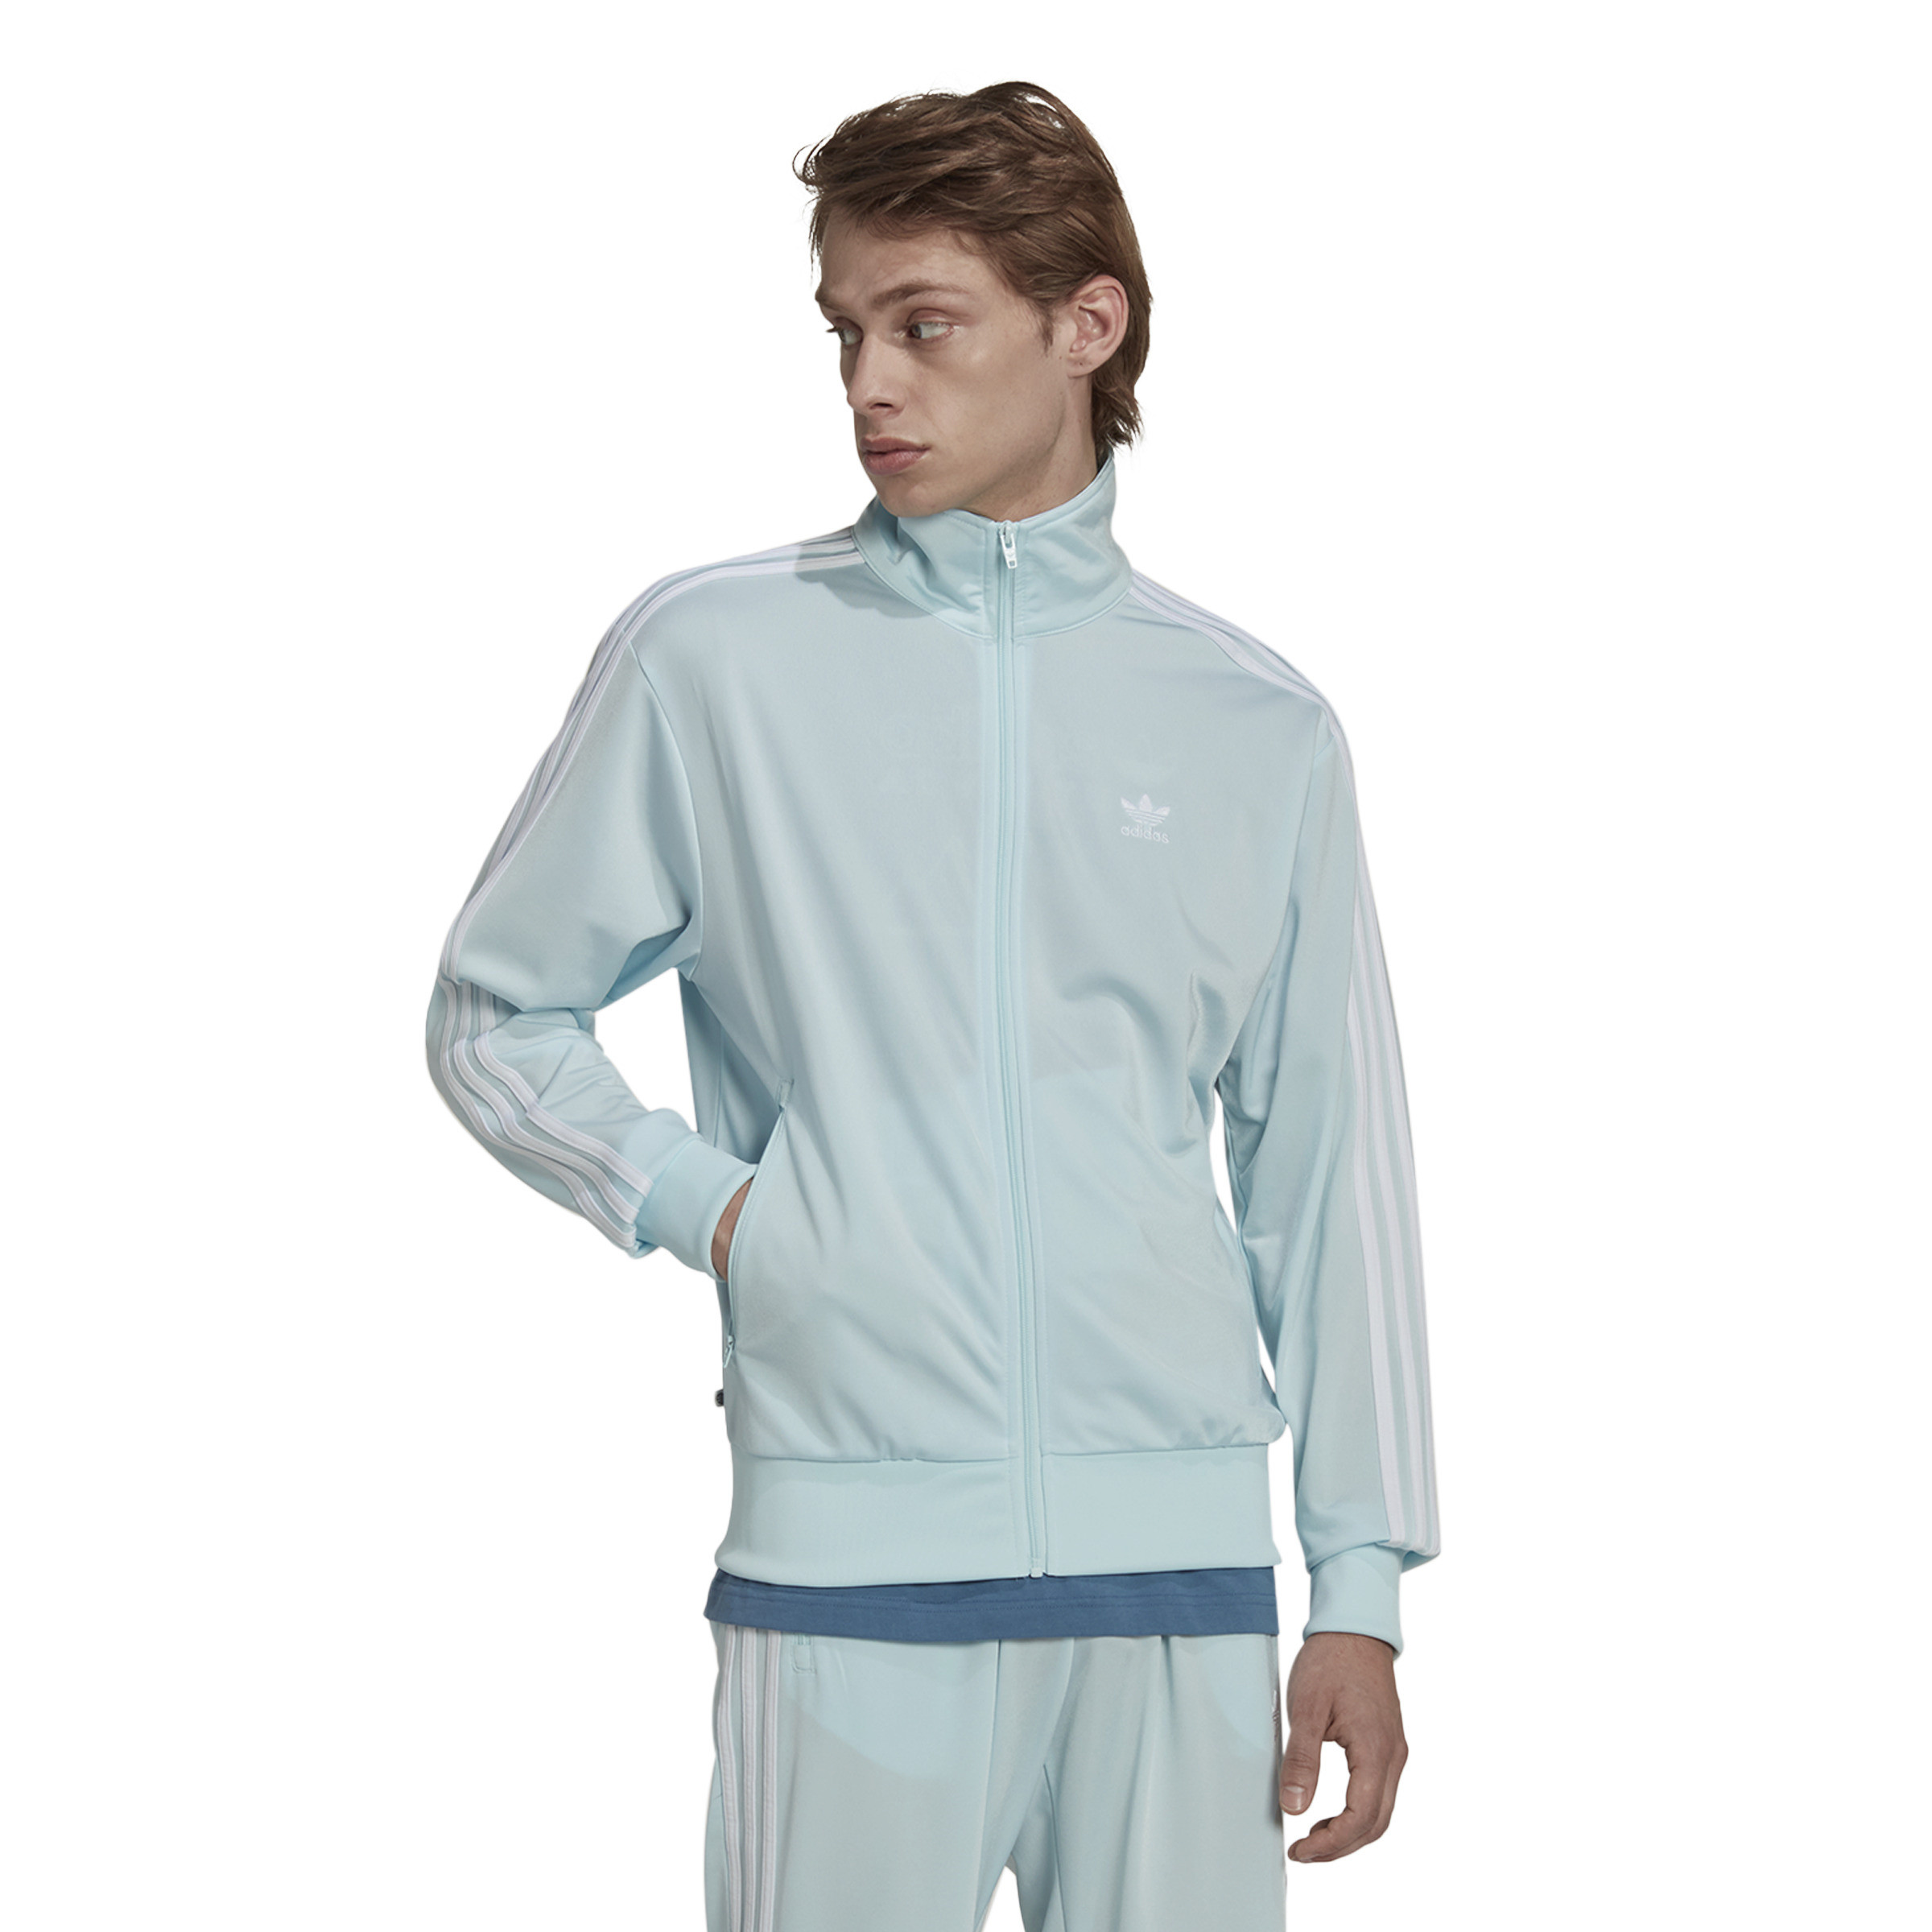 Adidas - Sweatshirt with logo, Light Blue, large image number 1